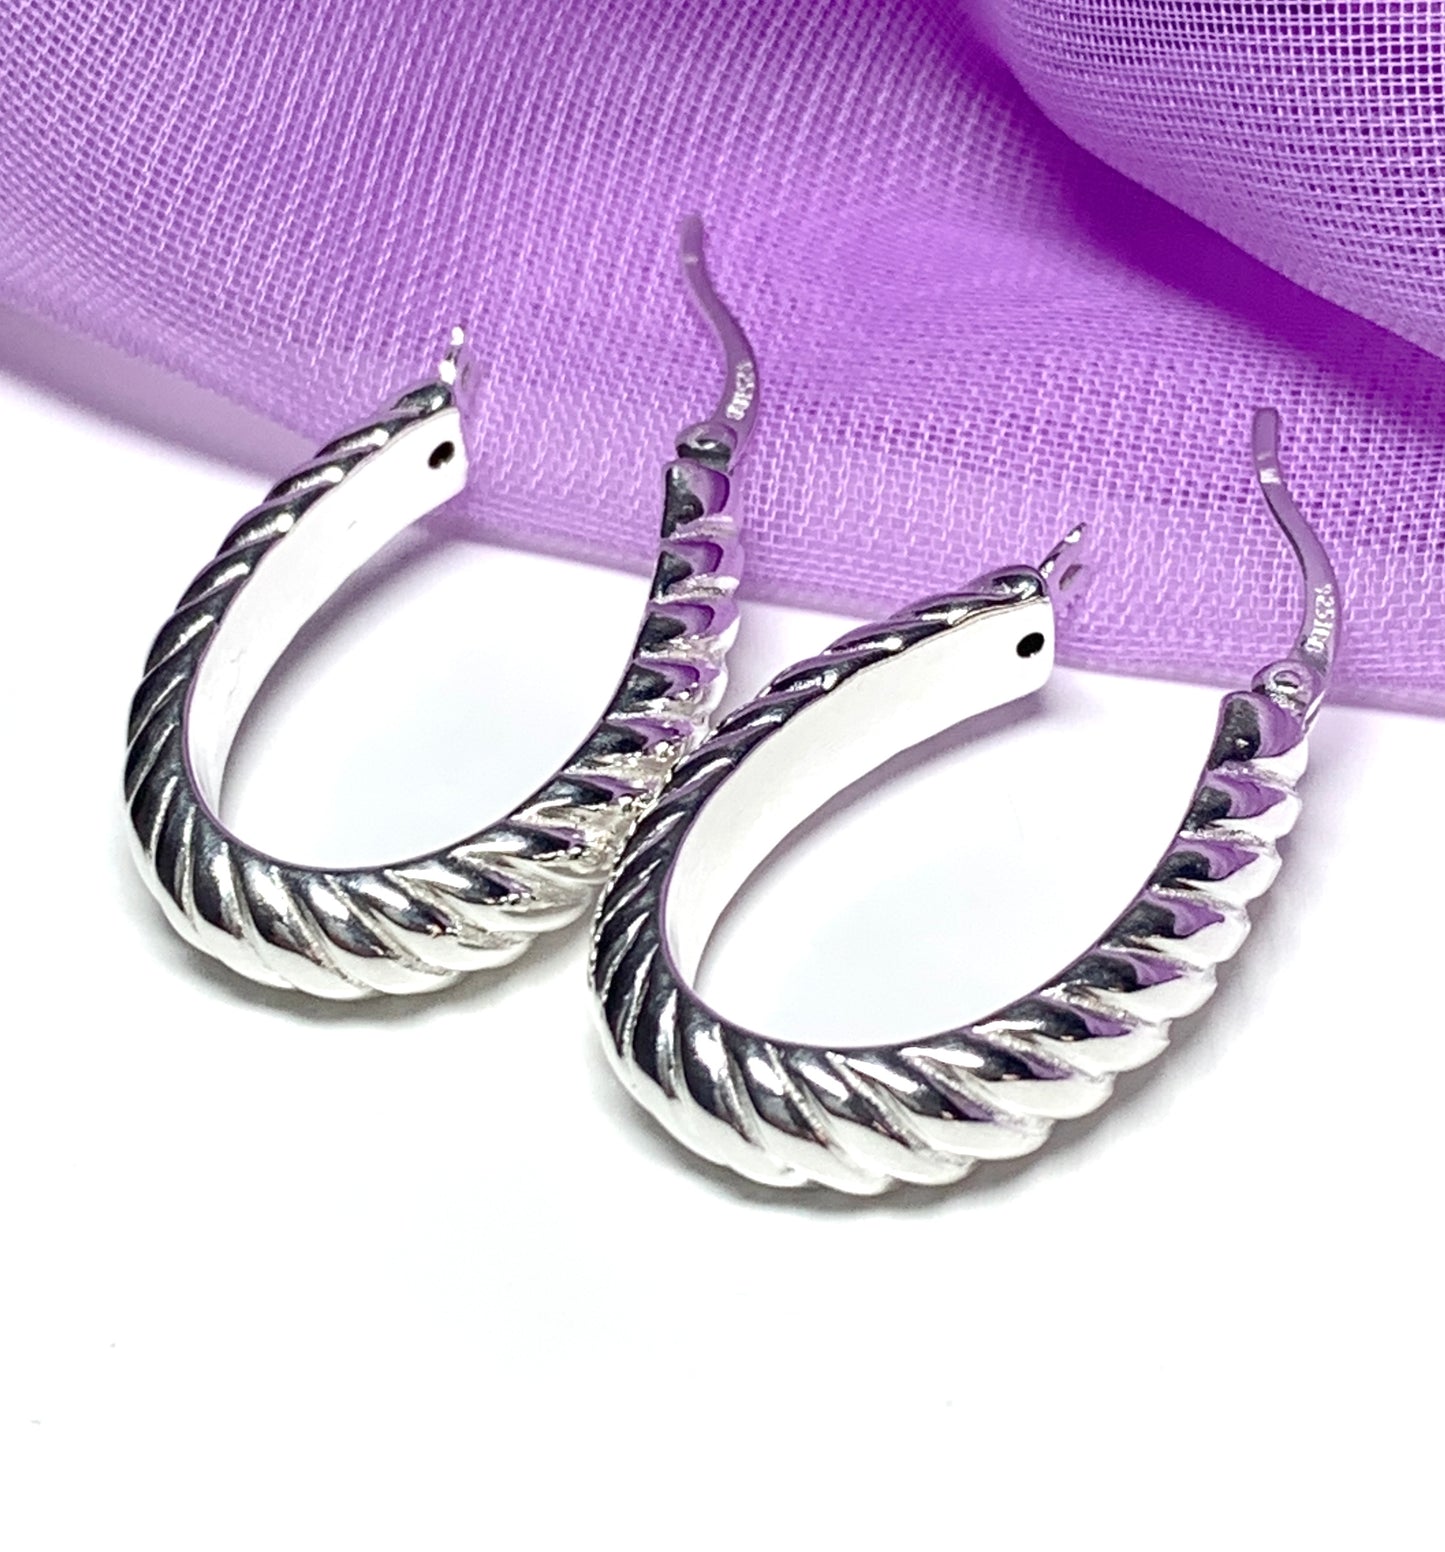 Sterling silver oval hoop earrings swirl patterned 27 mm x 18 mm